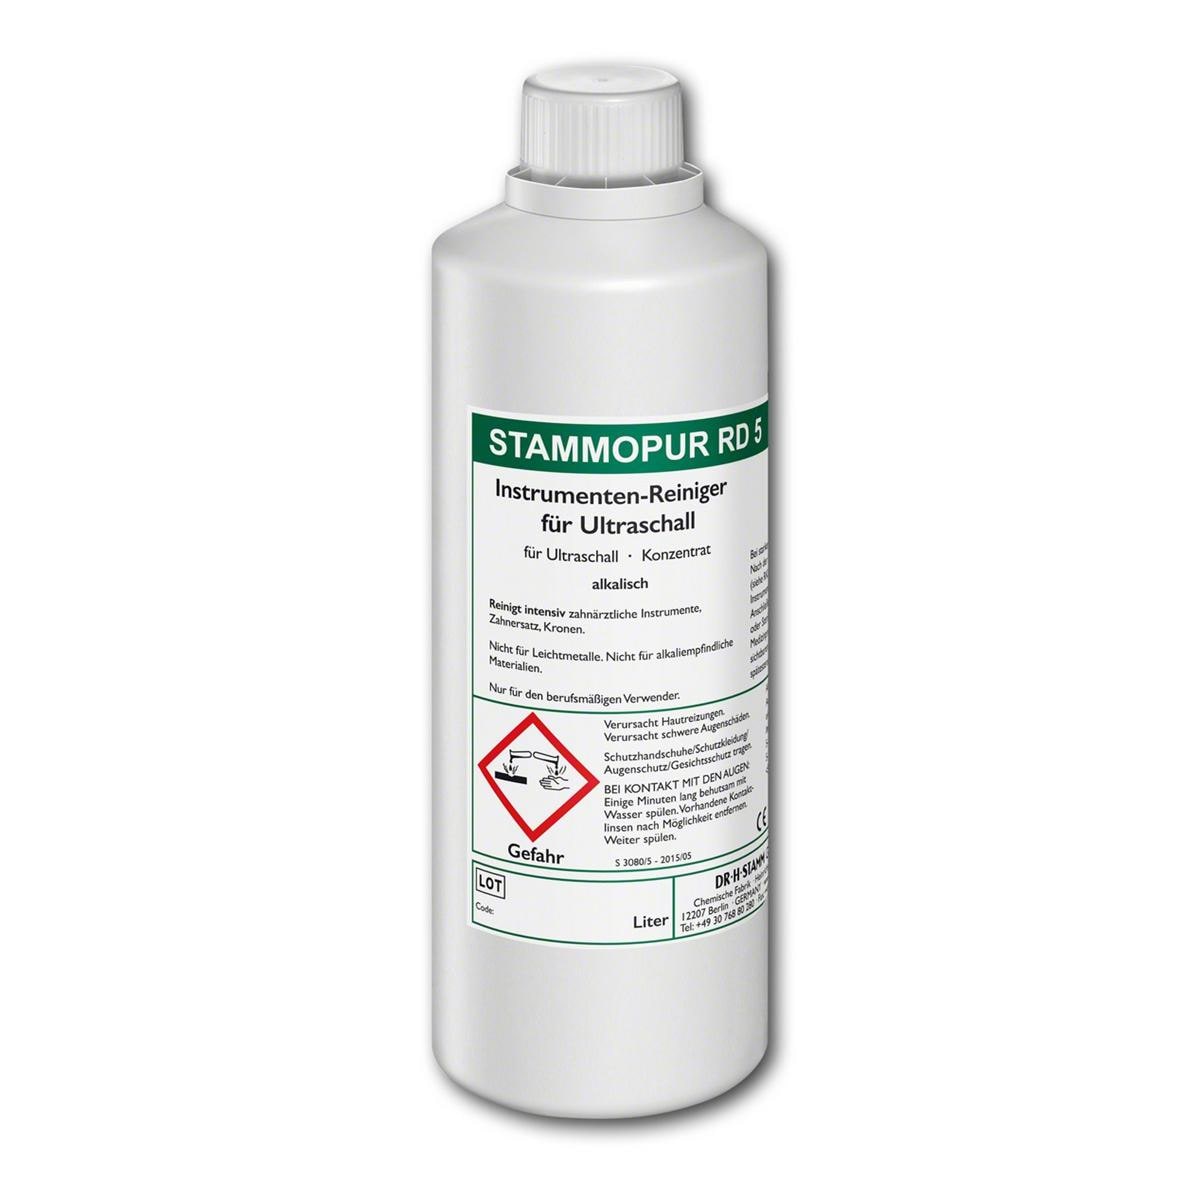 STAMMOPUR RD 5 - Flasche 1 Liter